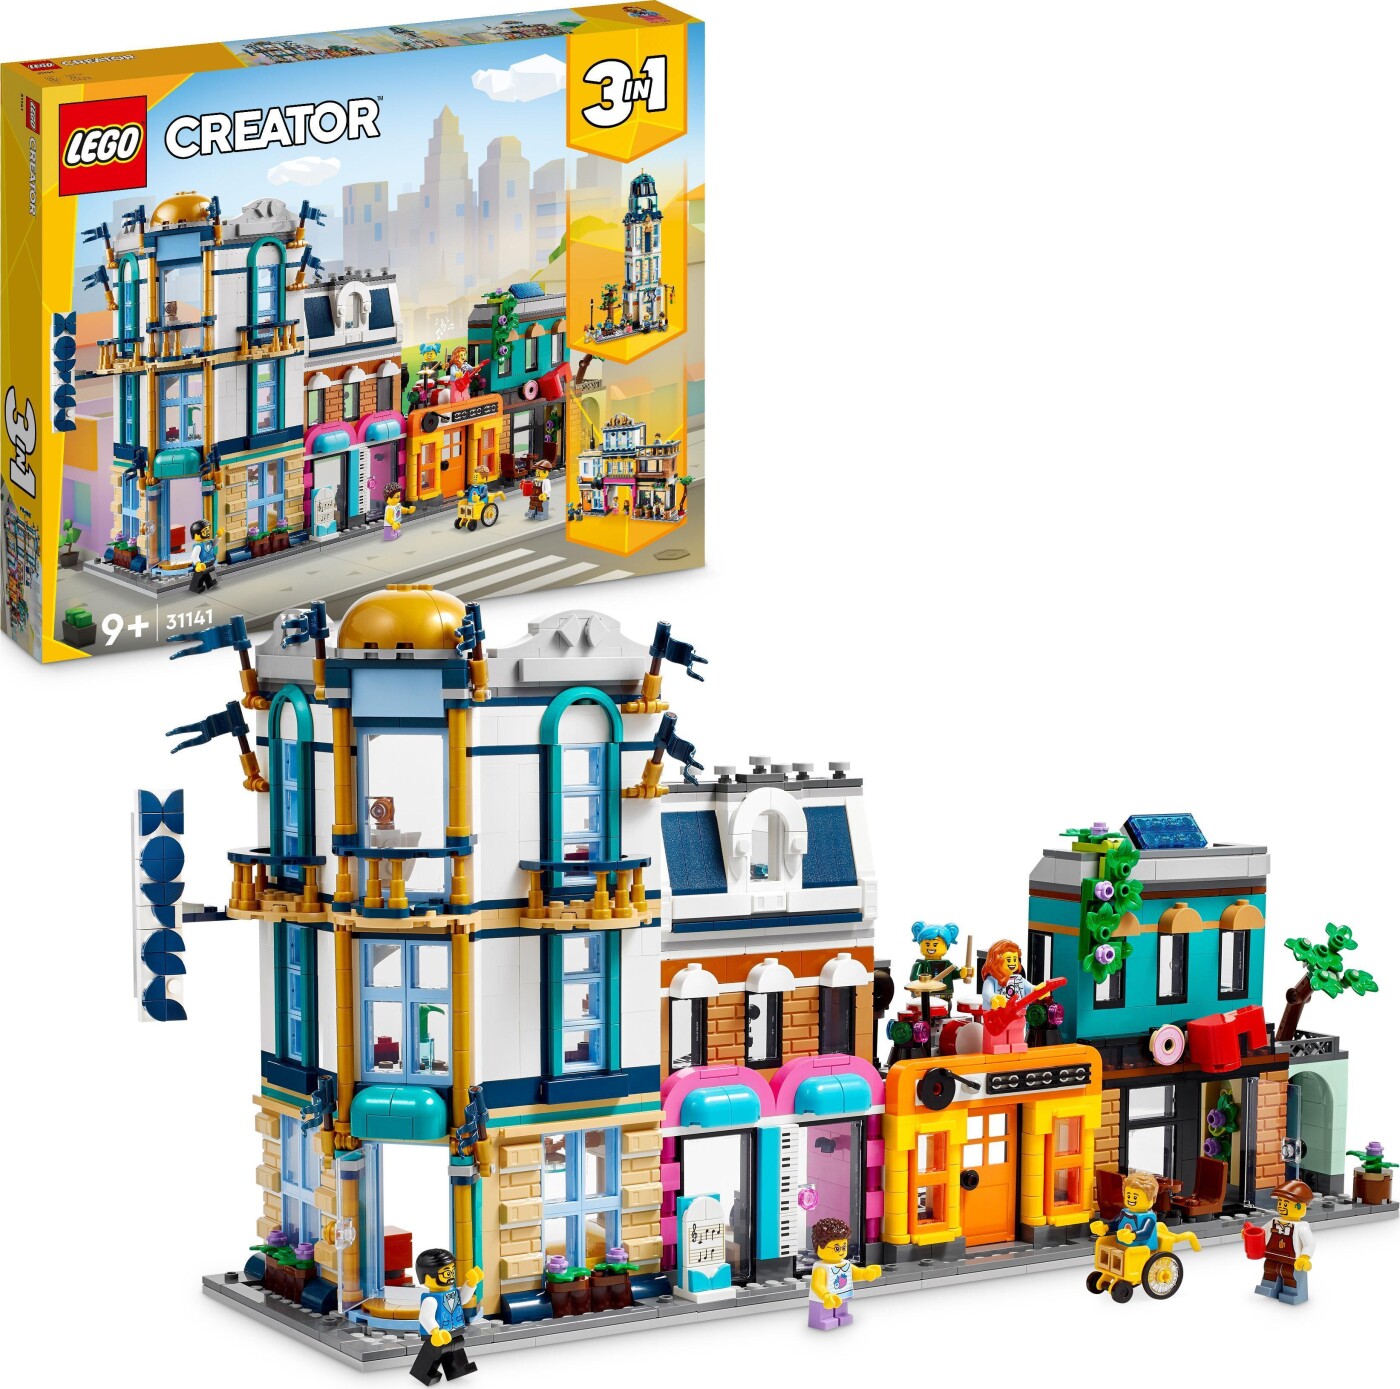 Billede af Lego Creator 3-in-1 - Hovedgade - 31141